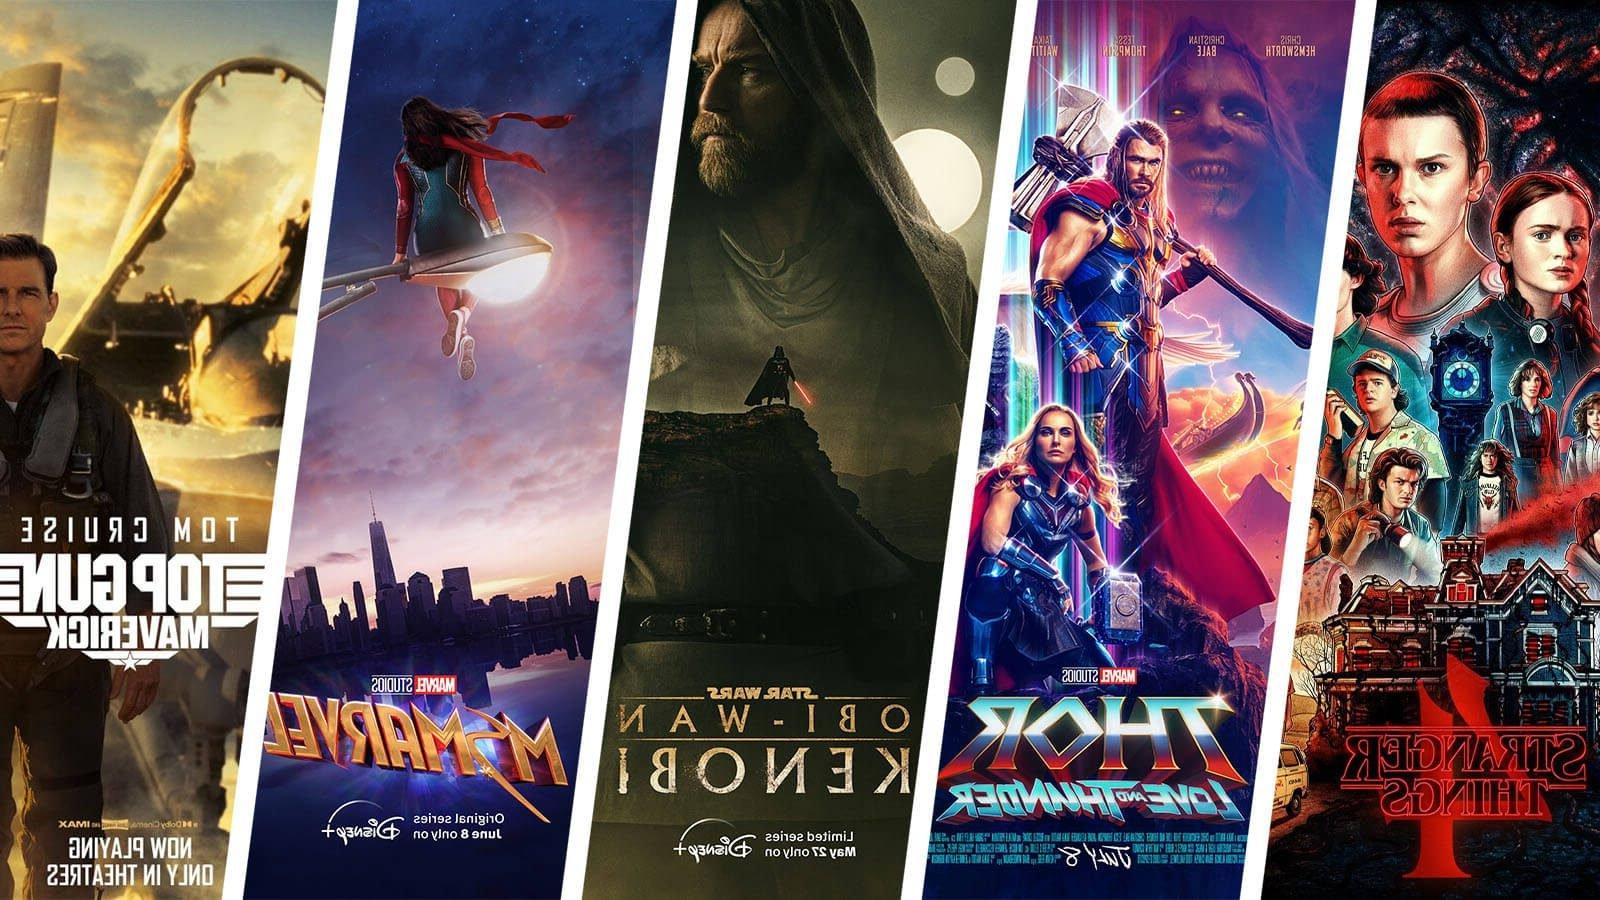 《怪奇物语4》(怪奇物语4)、《雷神》(Thor)、《欧比旺·克诺比》(欧比旺·肯诺比)、《哈利波特》(哈利波特)等电影海报. 《漫威》和《壮志凌云:特立独行》.